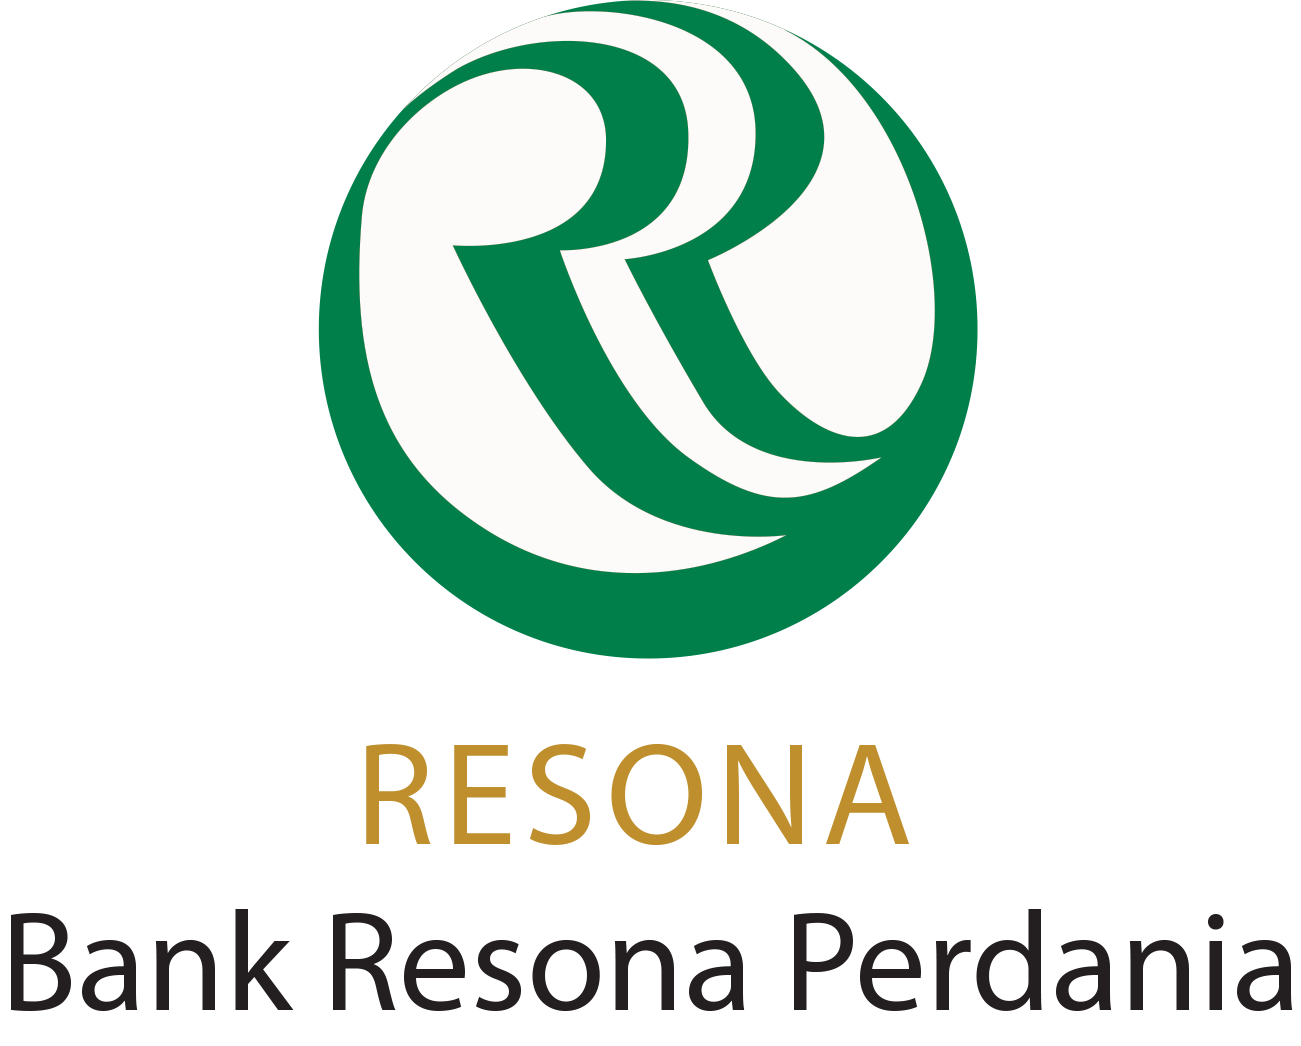 Resona Perdania Bank Logo - 237 Design